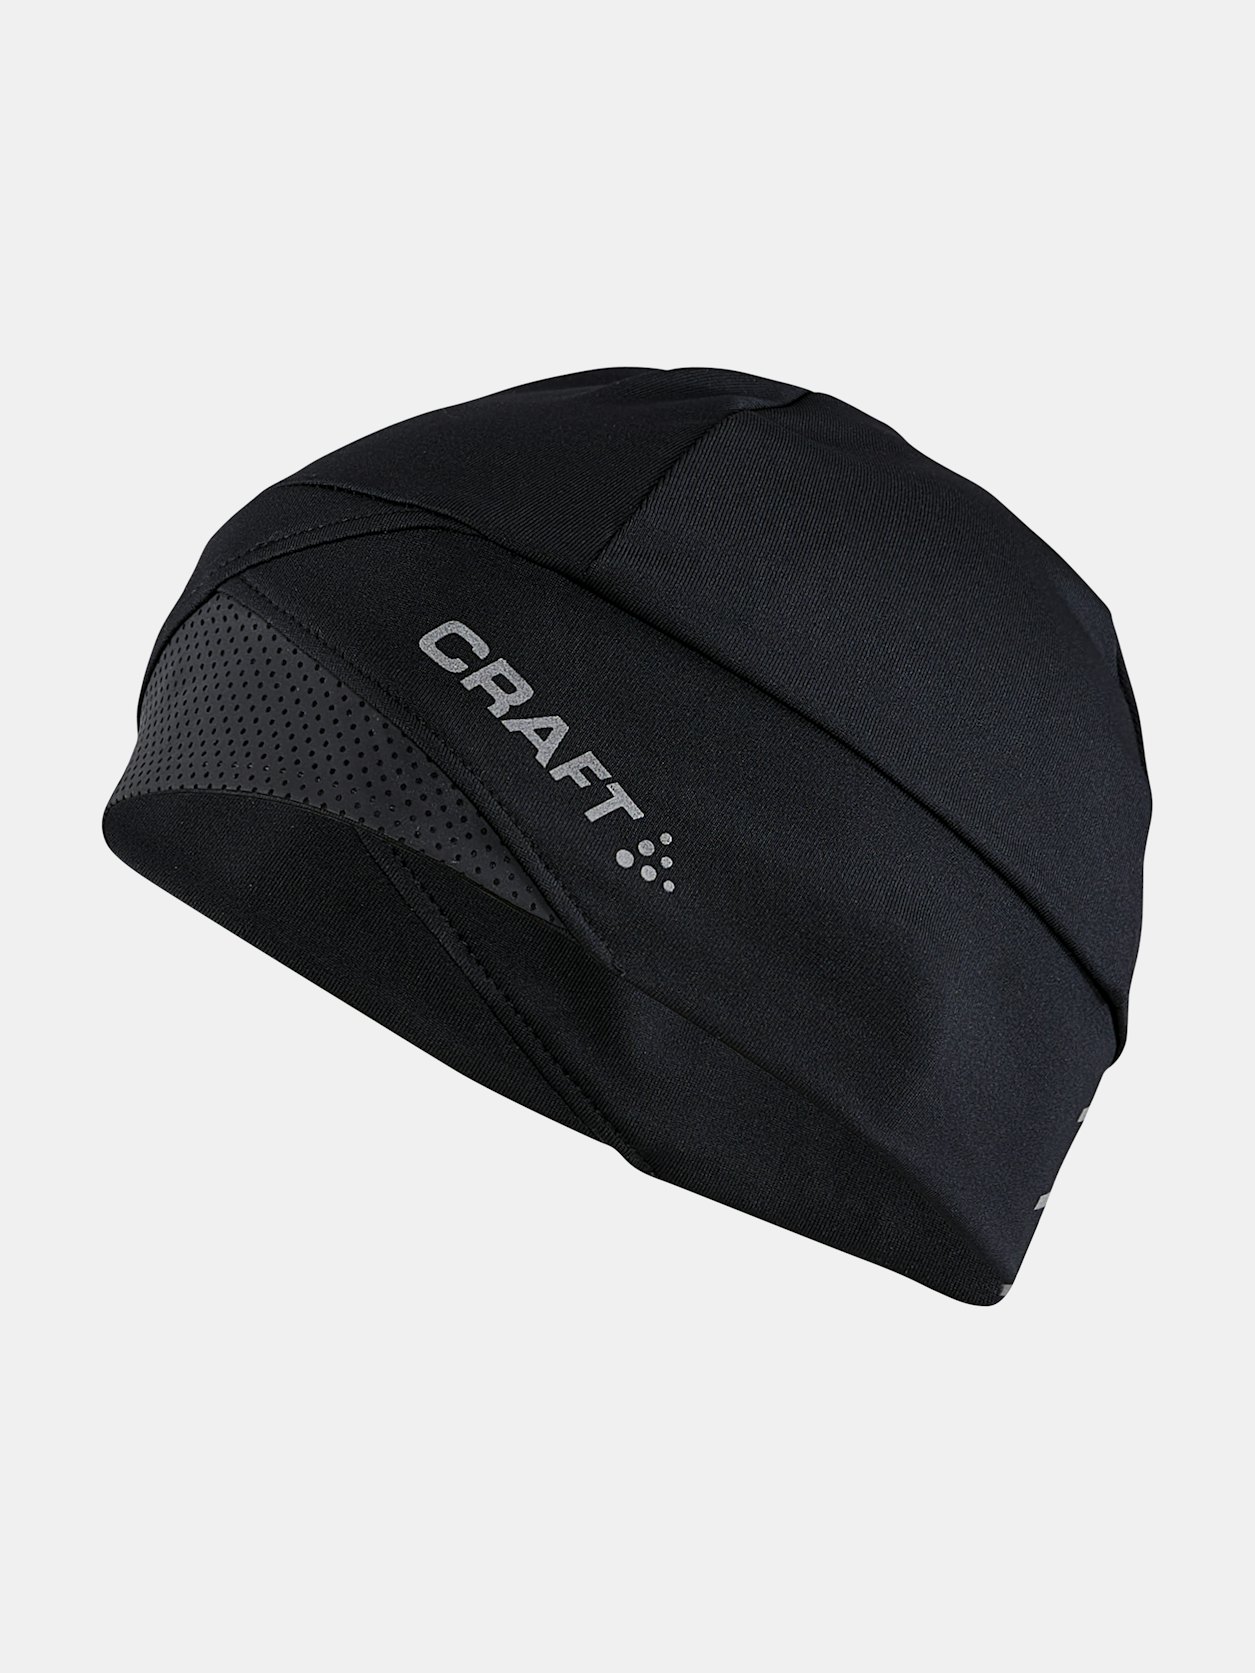 ADV Lumen Fleece Hat - Black | Craft Sportswear